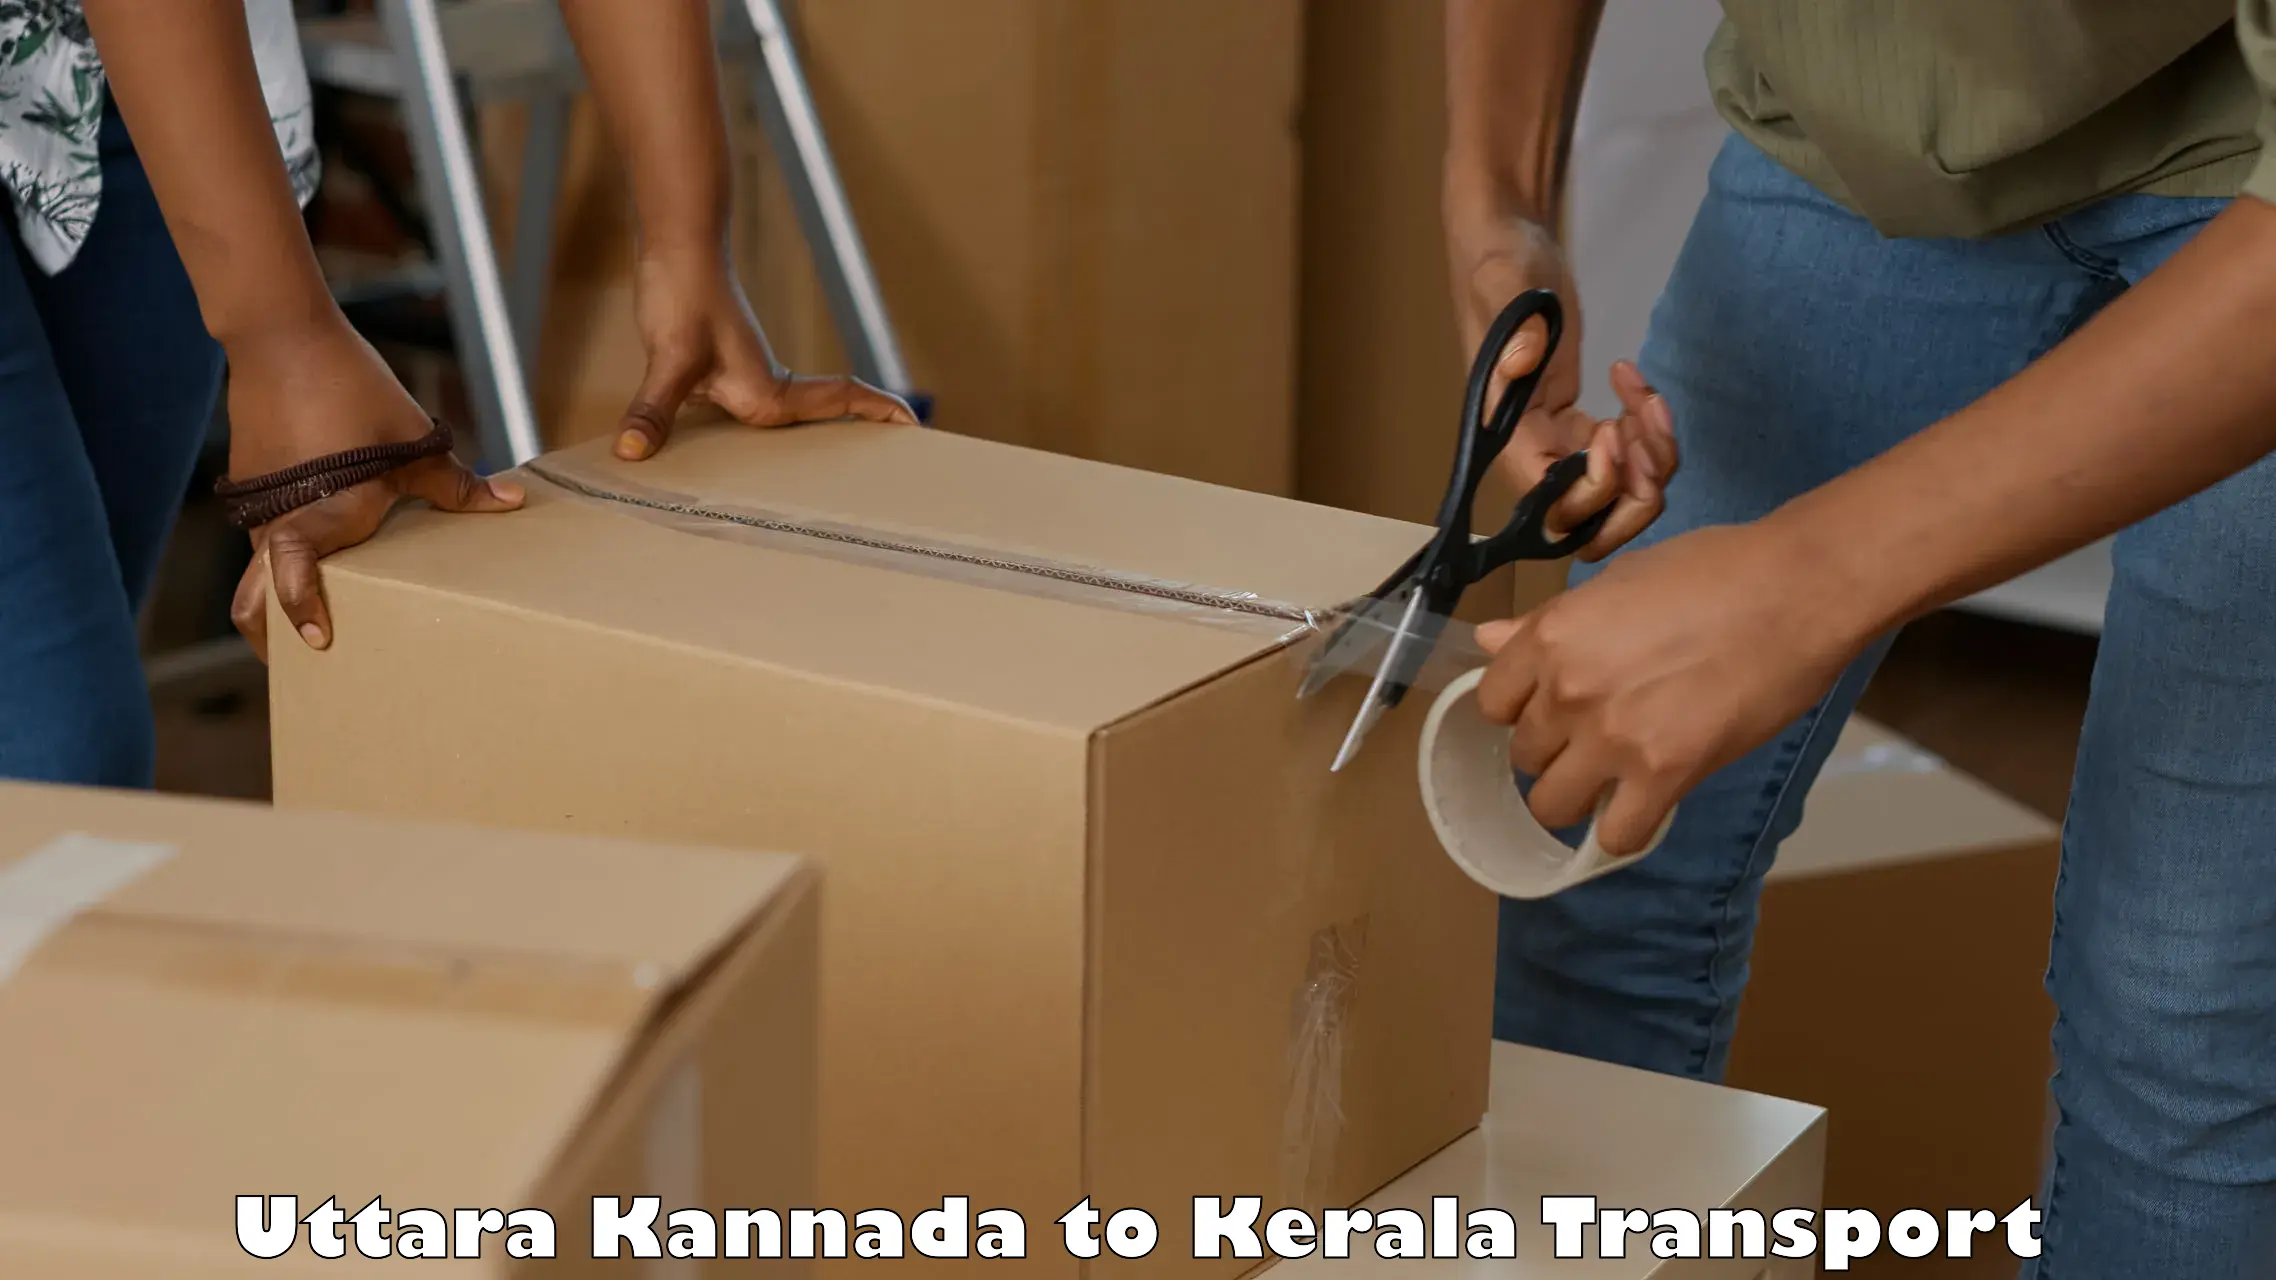 Air cargo transport services in Uttara Kannada to Karukachal